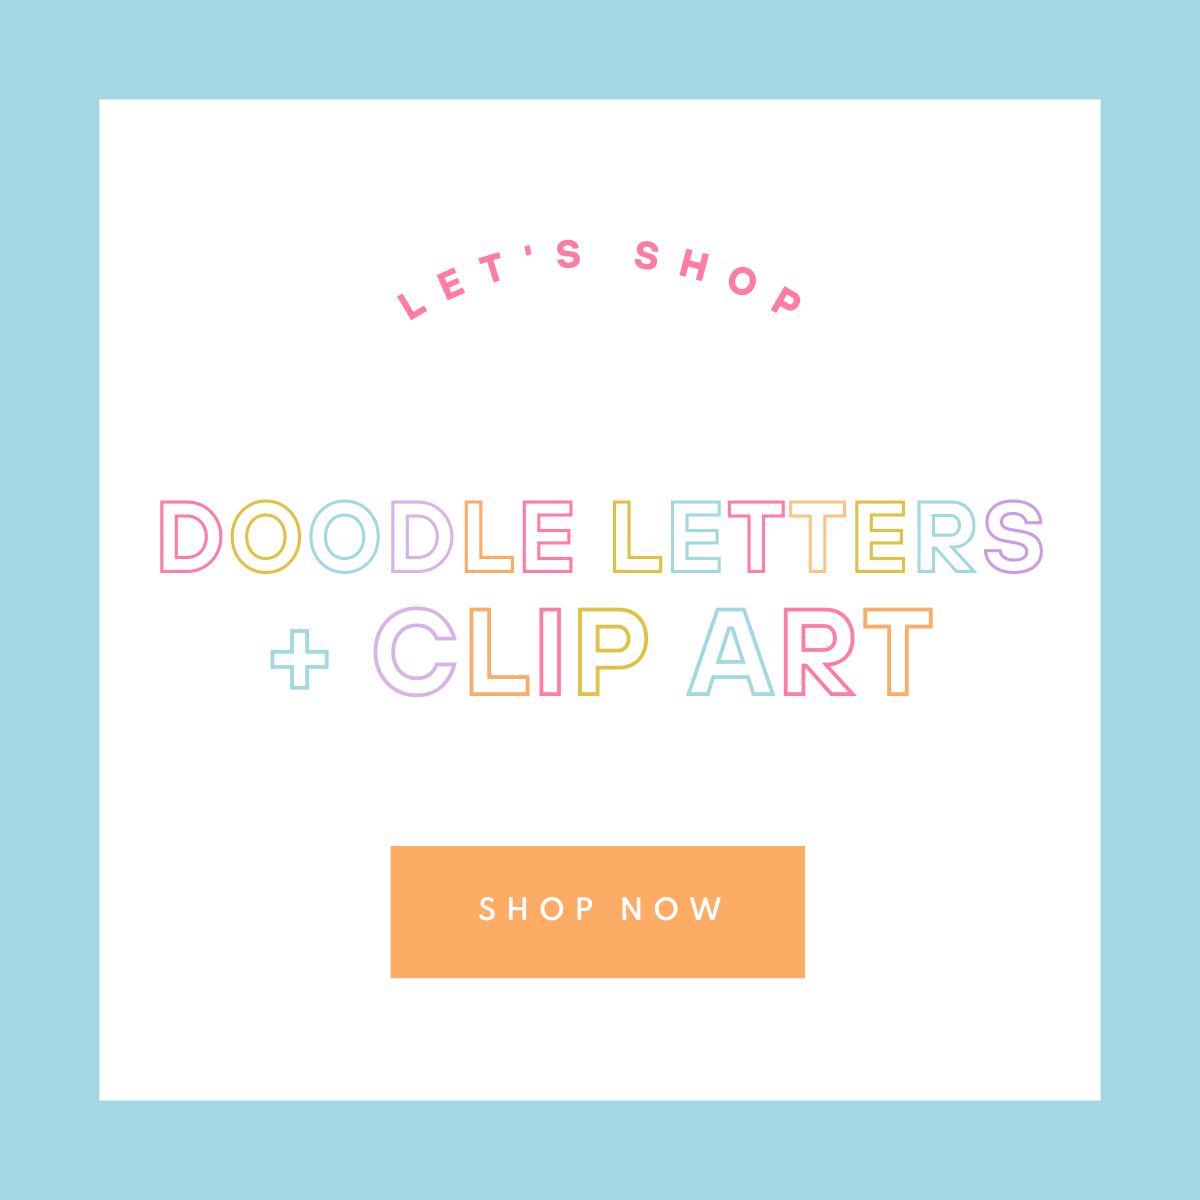 Doodle Letters + Clip art